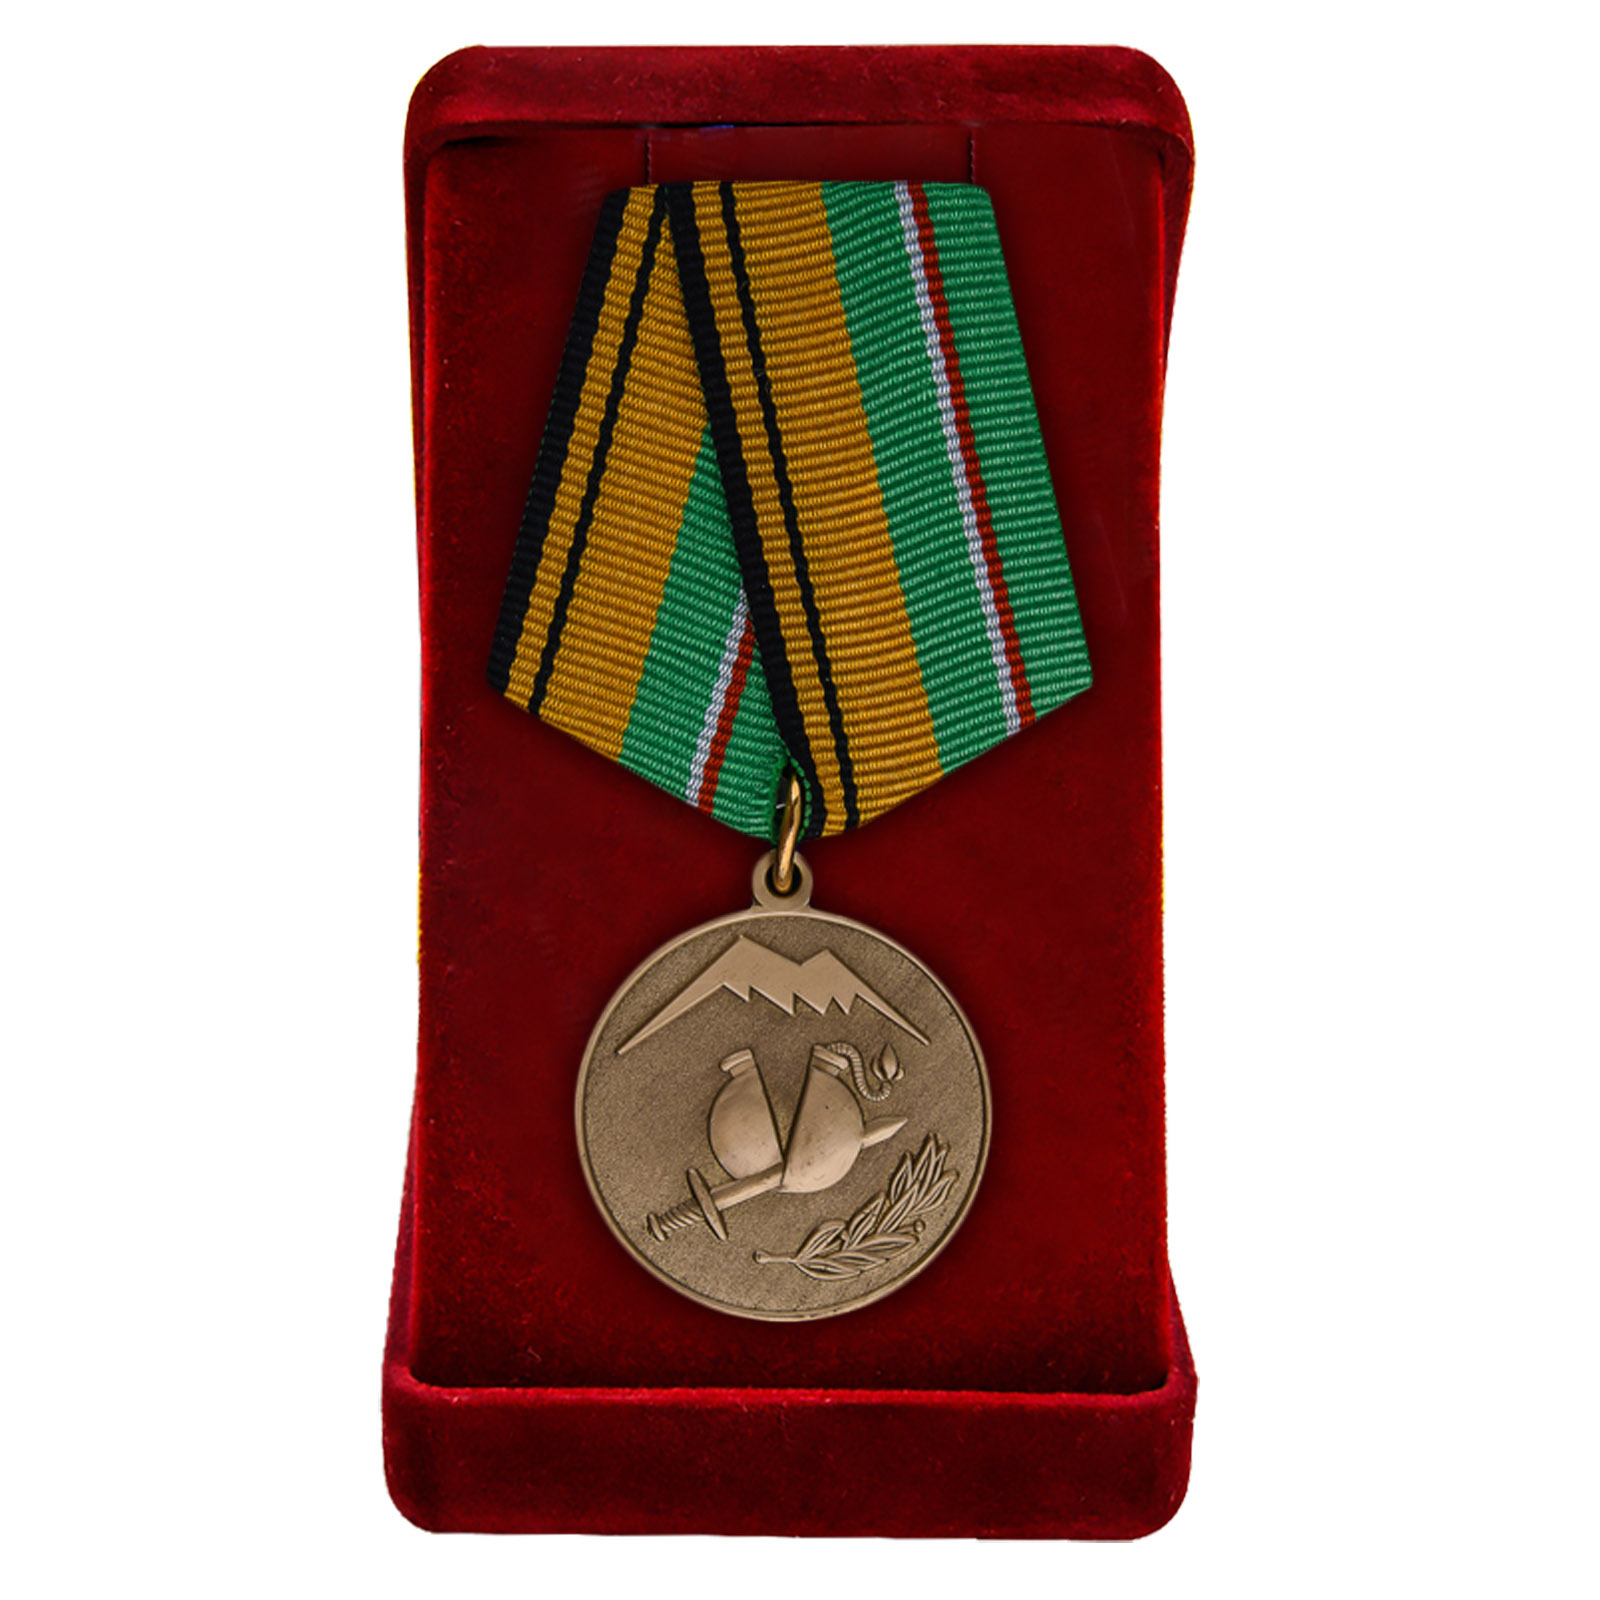 Купить медаль Участнику разминирования в Чеченской Республике и Республике Ингушетия МО России с доставкой